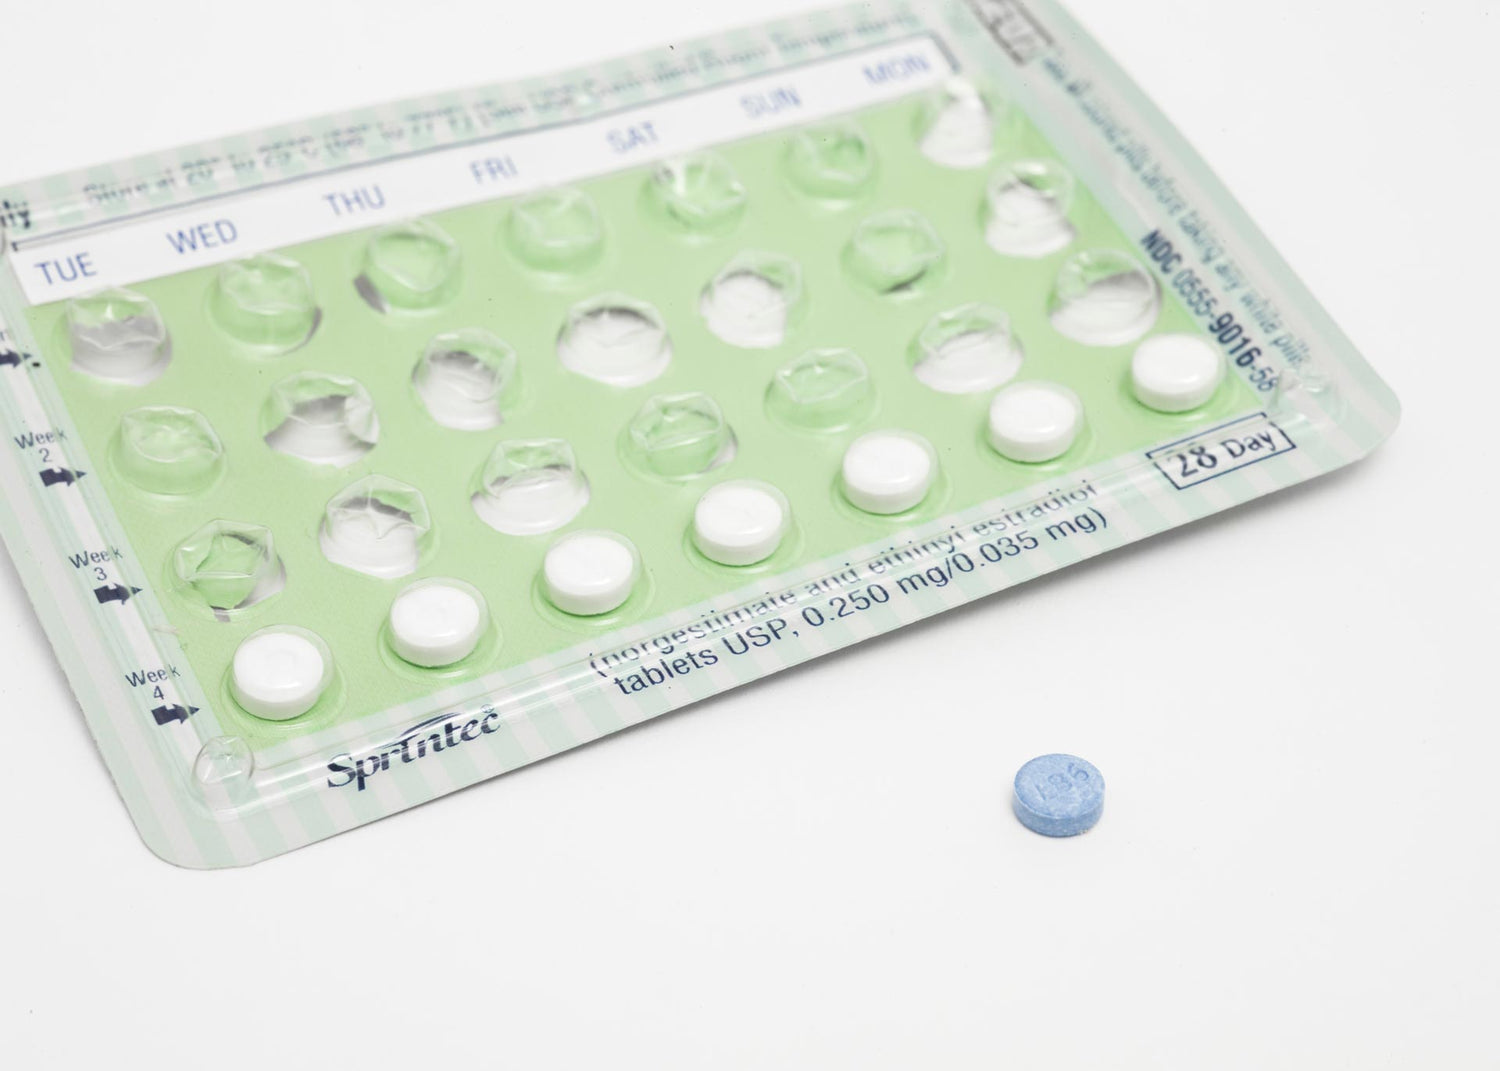 5 Signs of Contraception Coercion